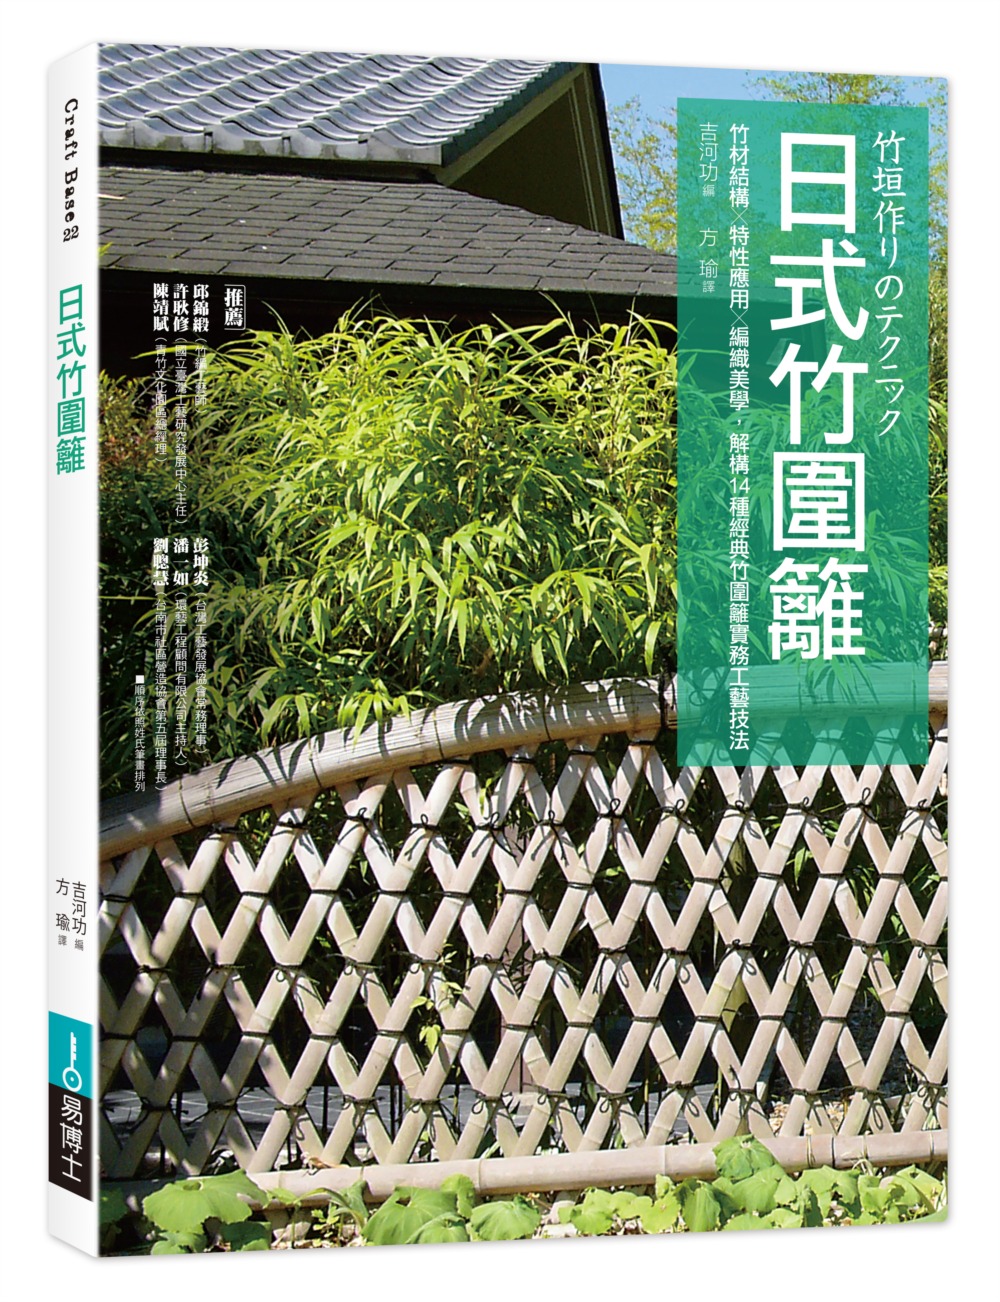 日式竹圍籬：竹材結構╳特性應用╳編織美學，解構14種經典竹圍...